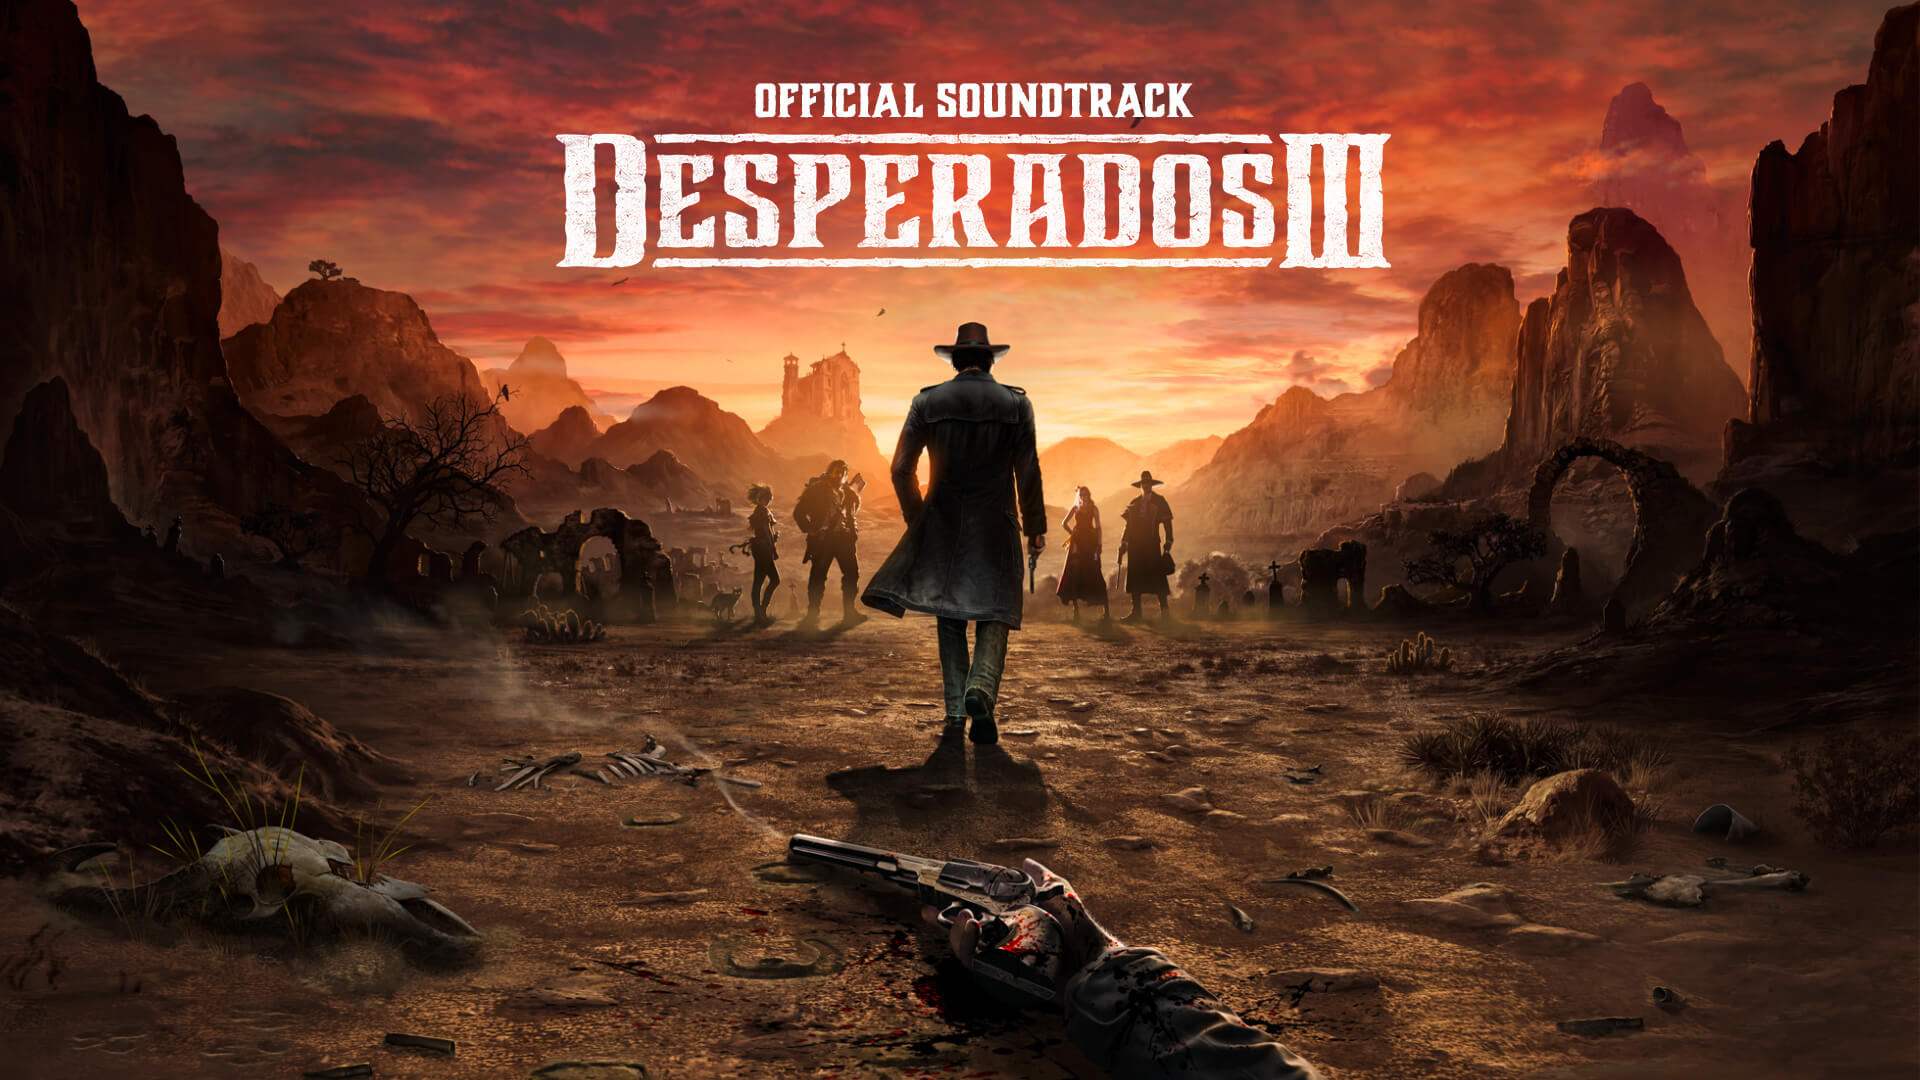 Desperados III - Soundtrack DLC Steam CD Key 4.51$